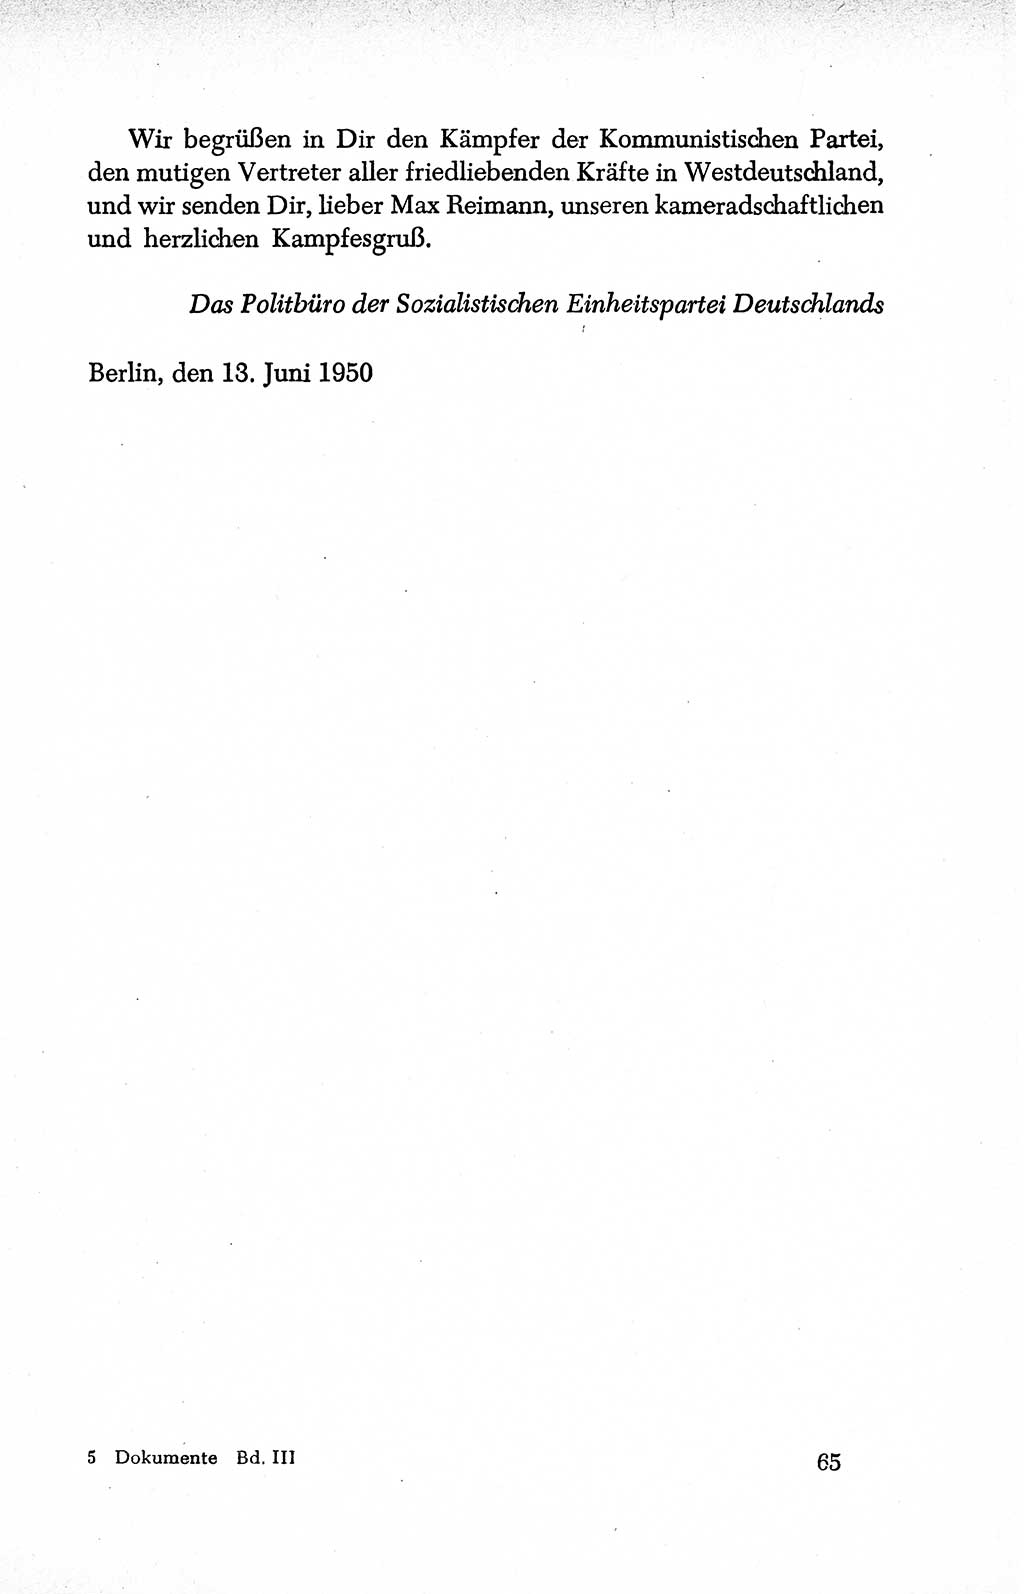 Dokumente der Sozialistischen Einheitspartei Deutschlands (SED) [Deutsche Demokratische Republik (DDR)] 1950-1952, Seite 65 (Dok. SED DDR 1950-1952, S. 65)